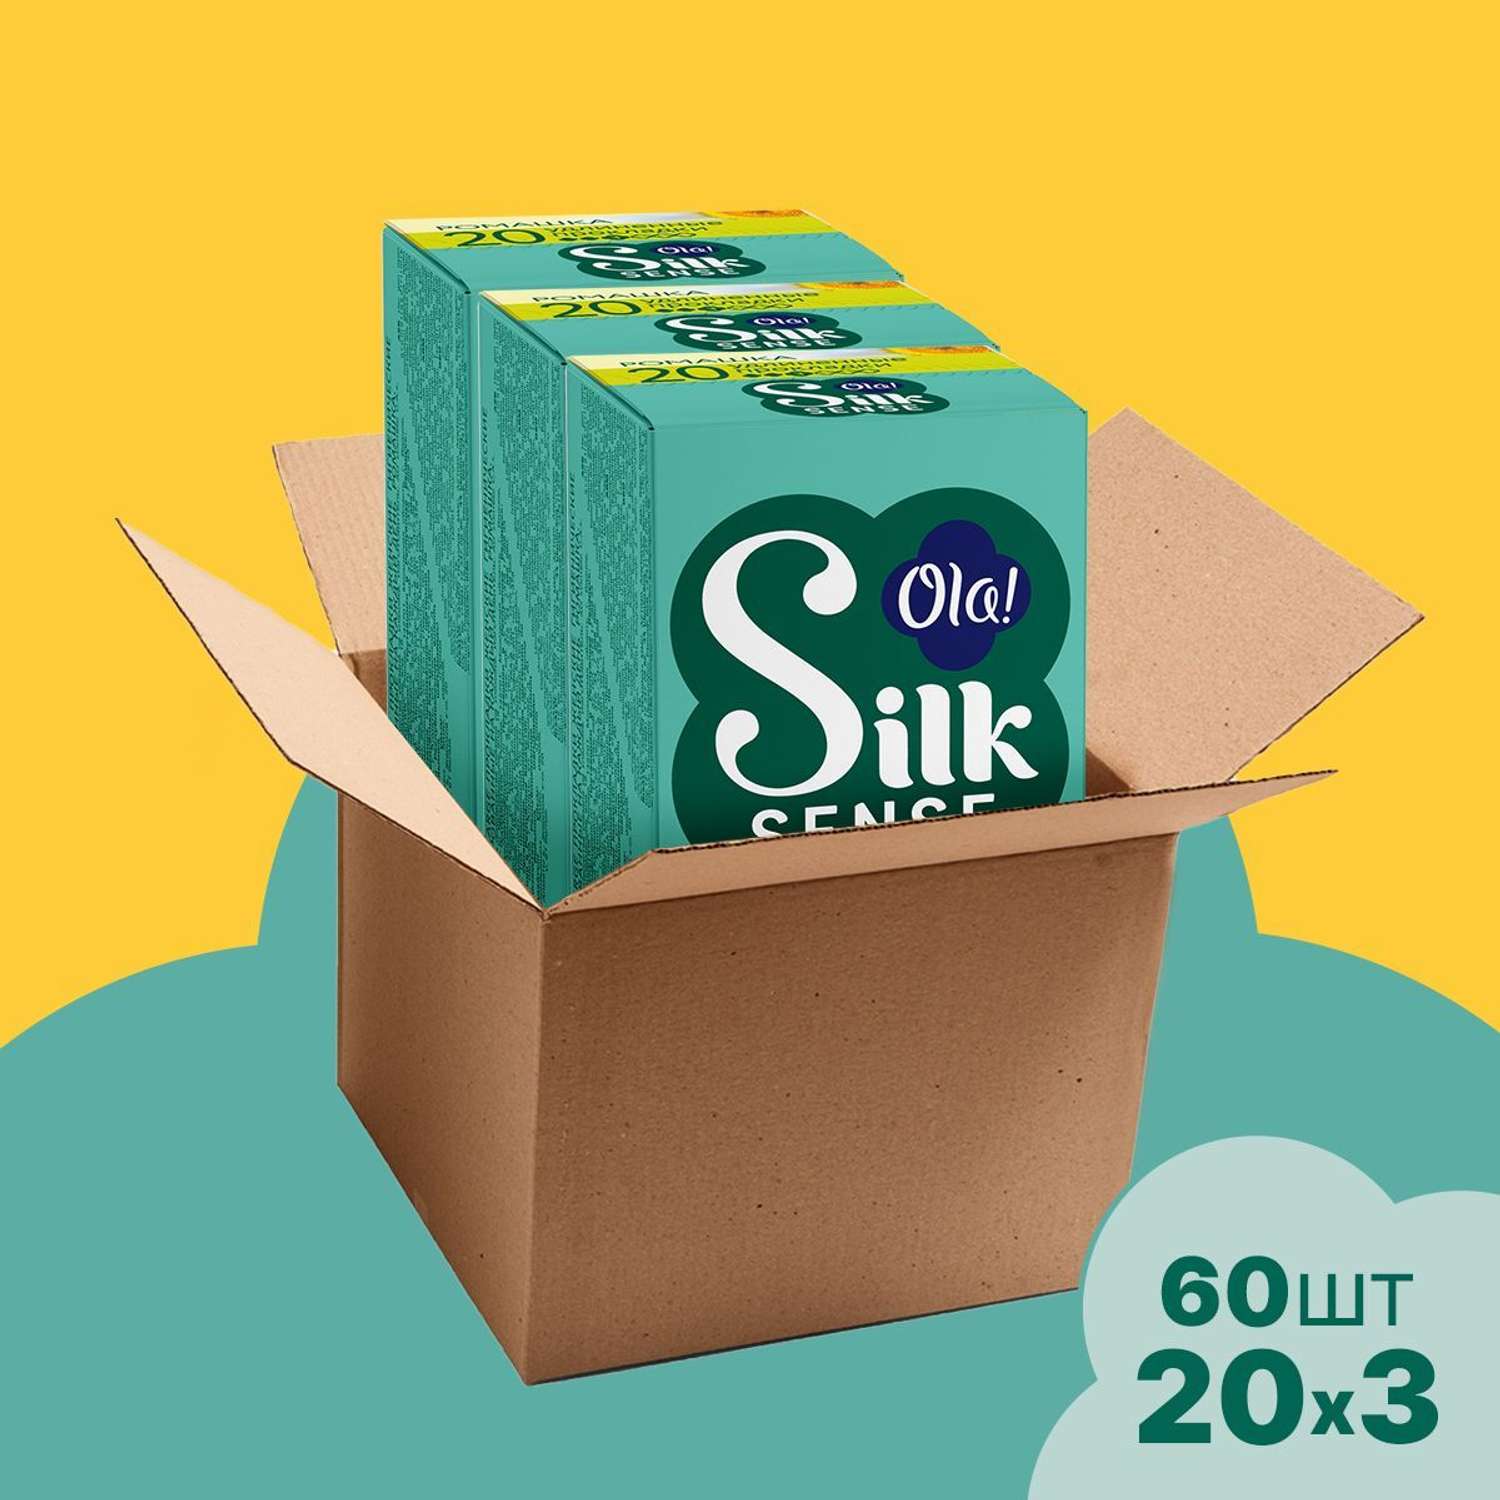 Ежедневные прокладки Ola! Silk Sense удлиненные аромат Ромашка 60 шт 3 уп по 20 шт - фото 2